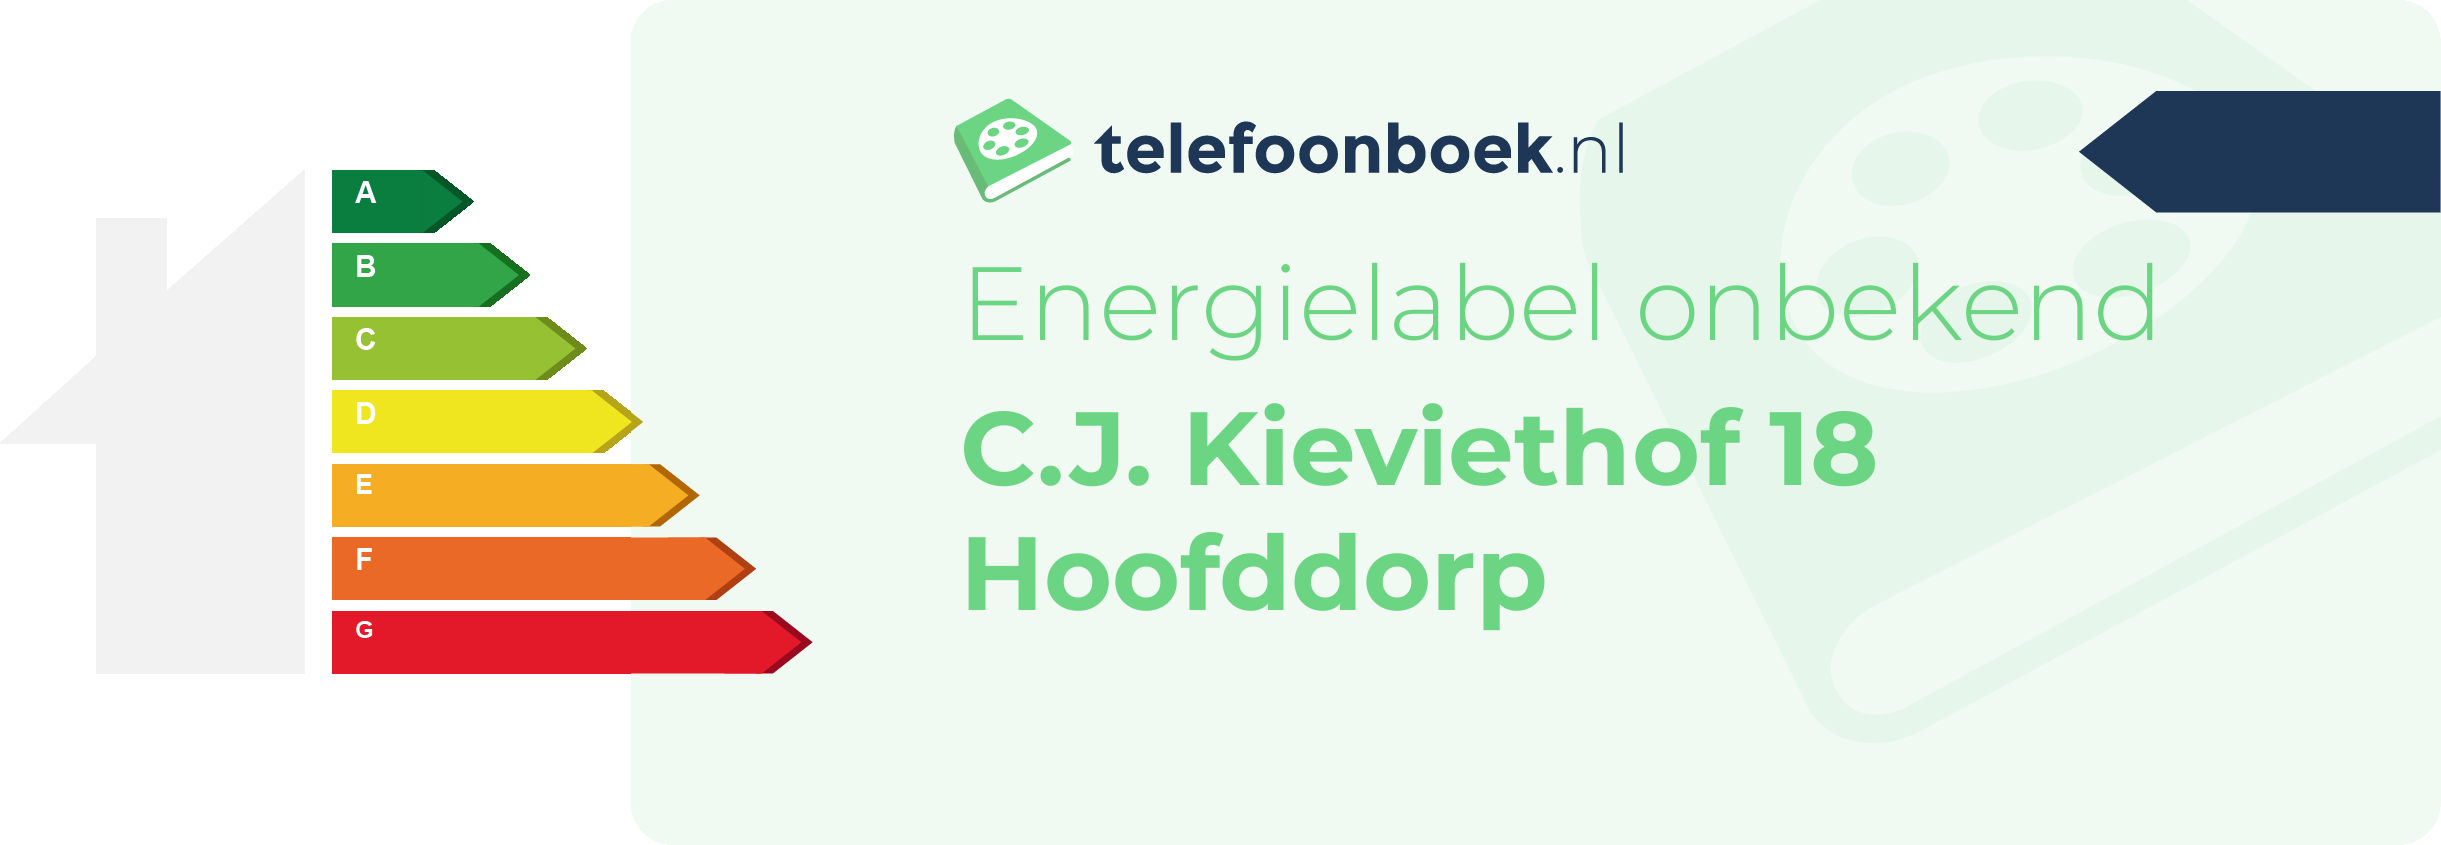 Energielabel C.J. Kieviethof 18 Hoofddorp